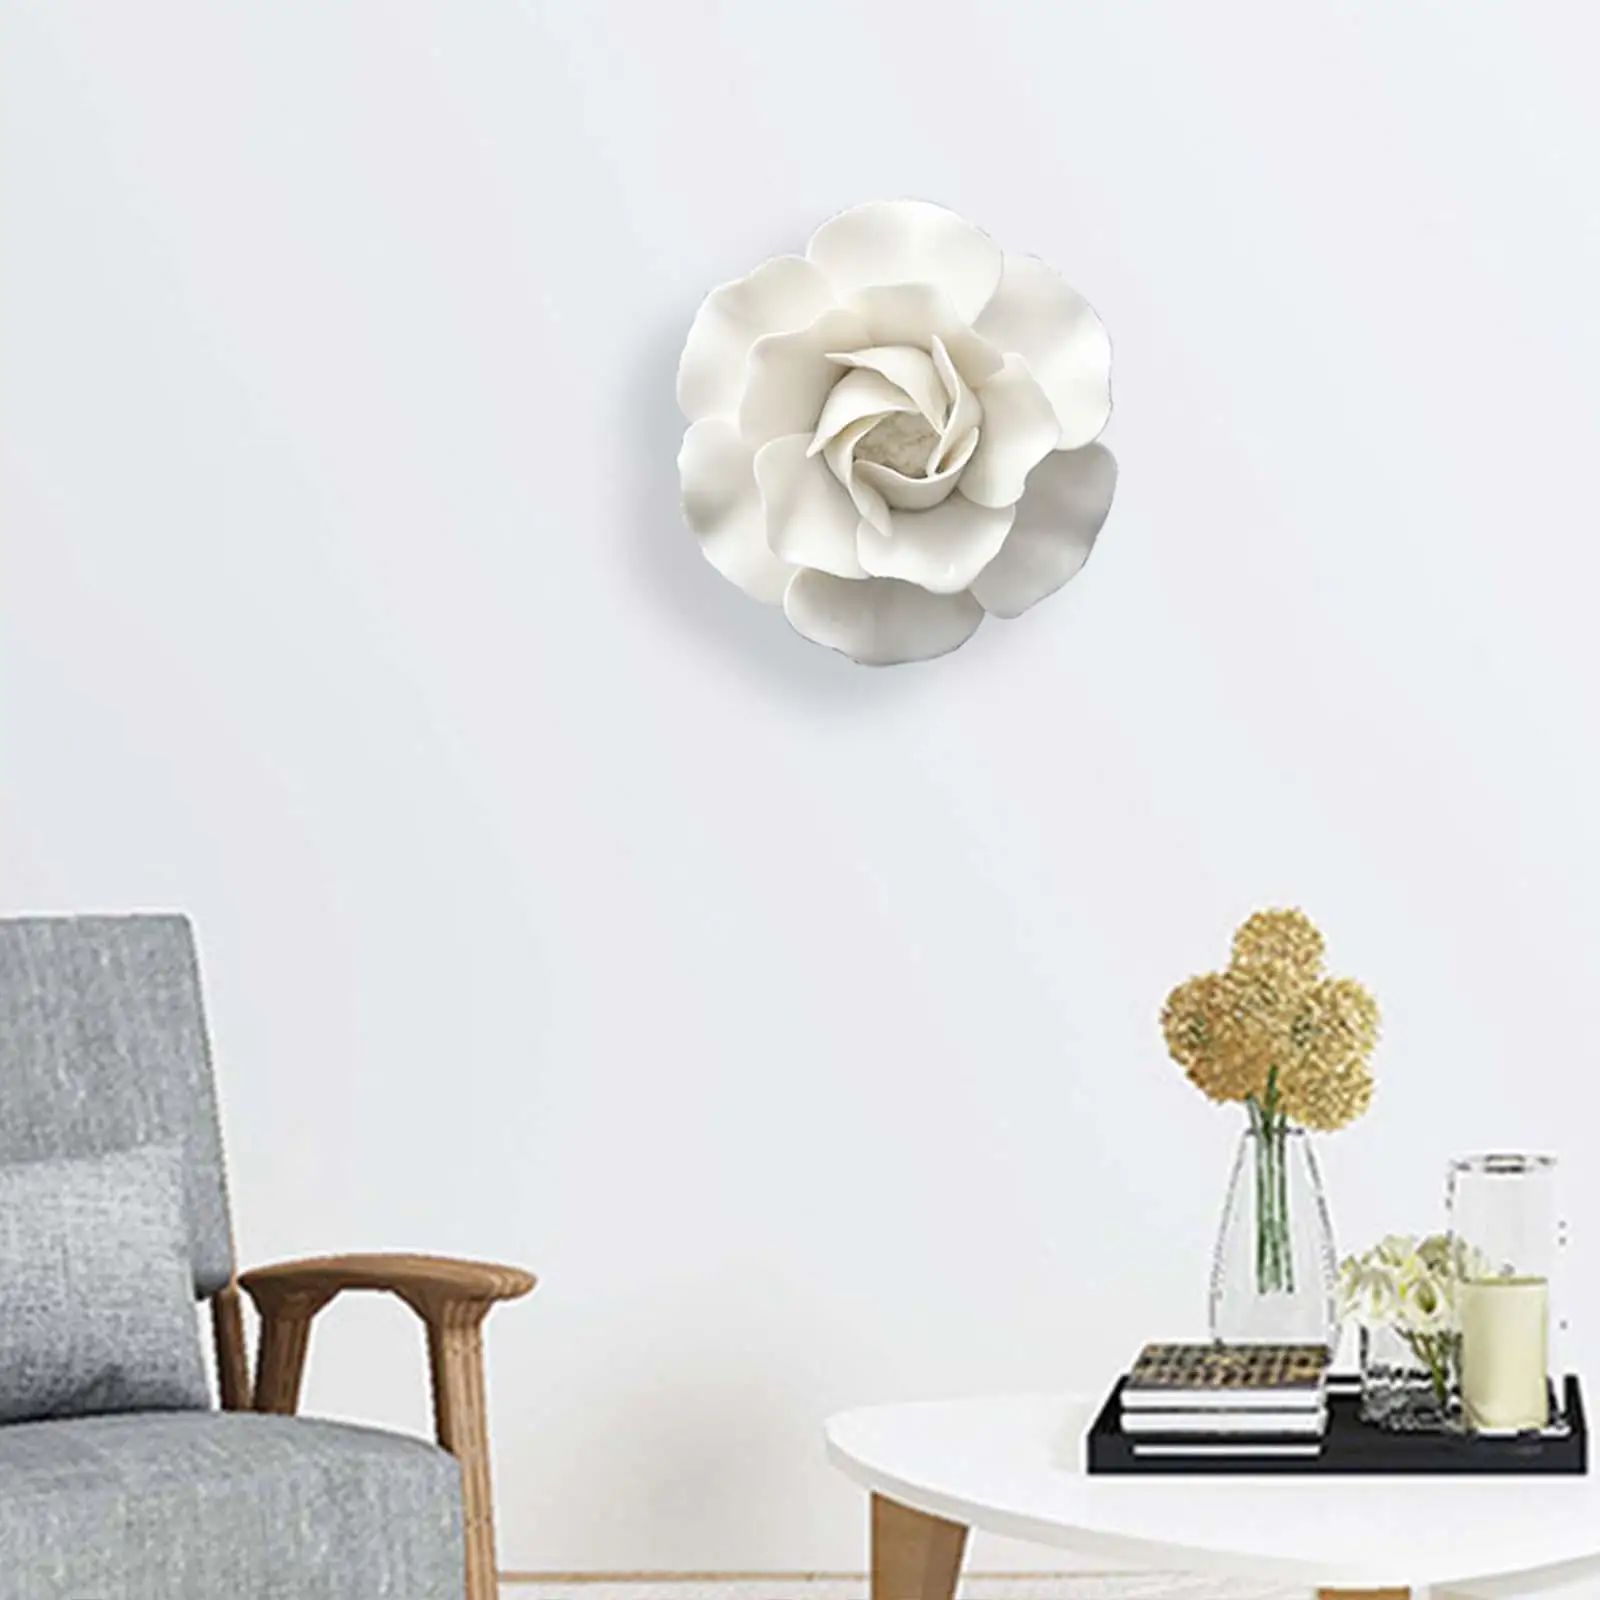 Hanging Wall 3D Ceramic Flower White Wall Art 3D Home Decor Arts Sculpture Artificial Flower for Bathroom Garden Hallway Office